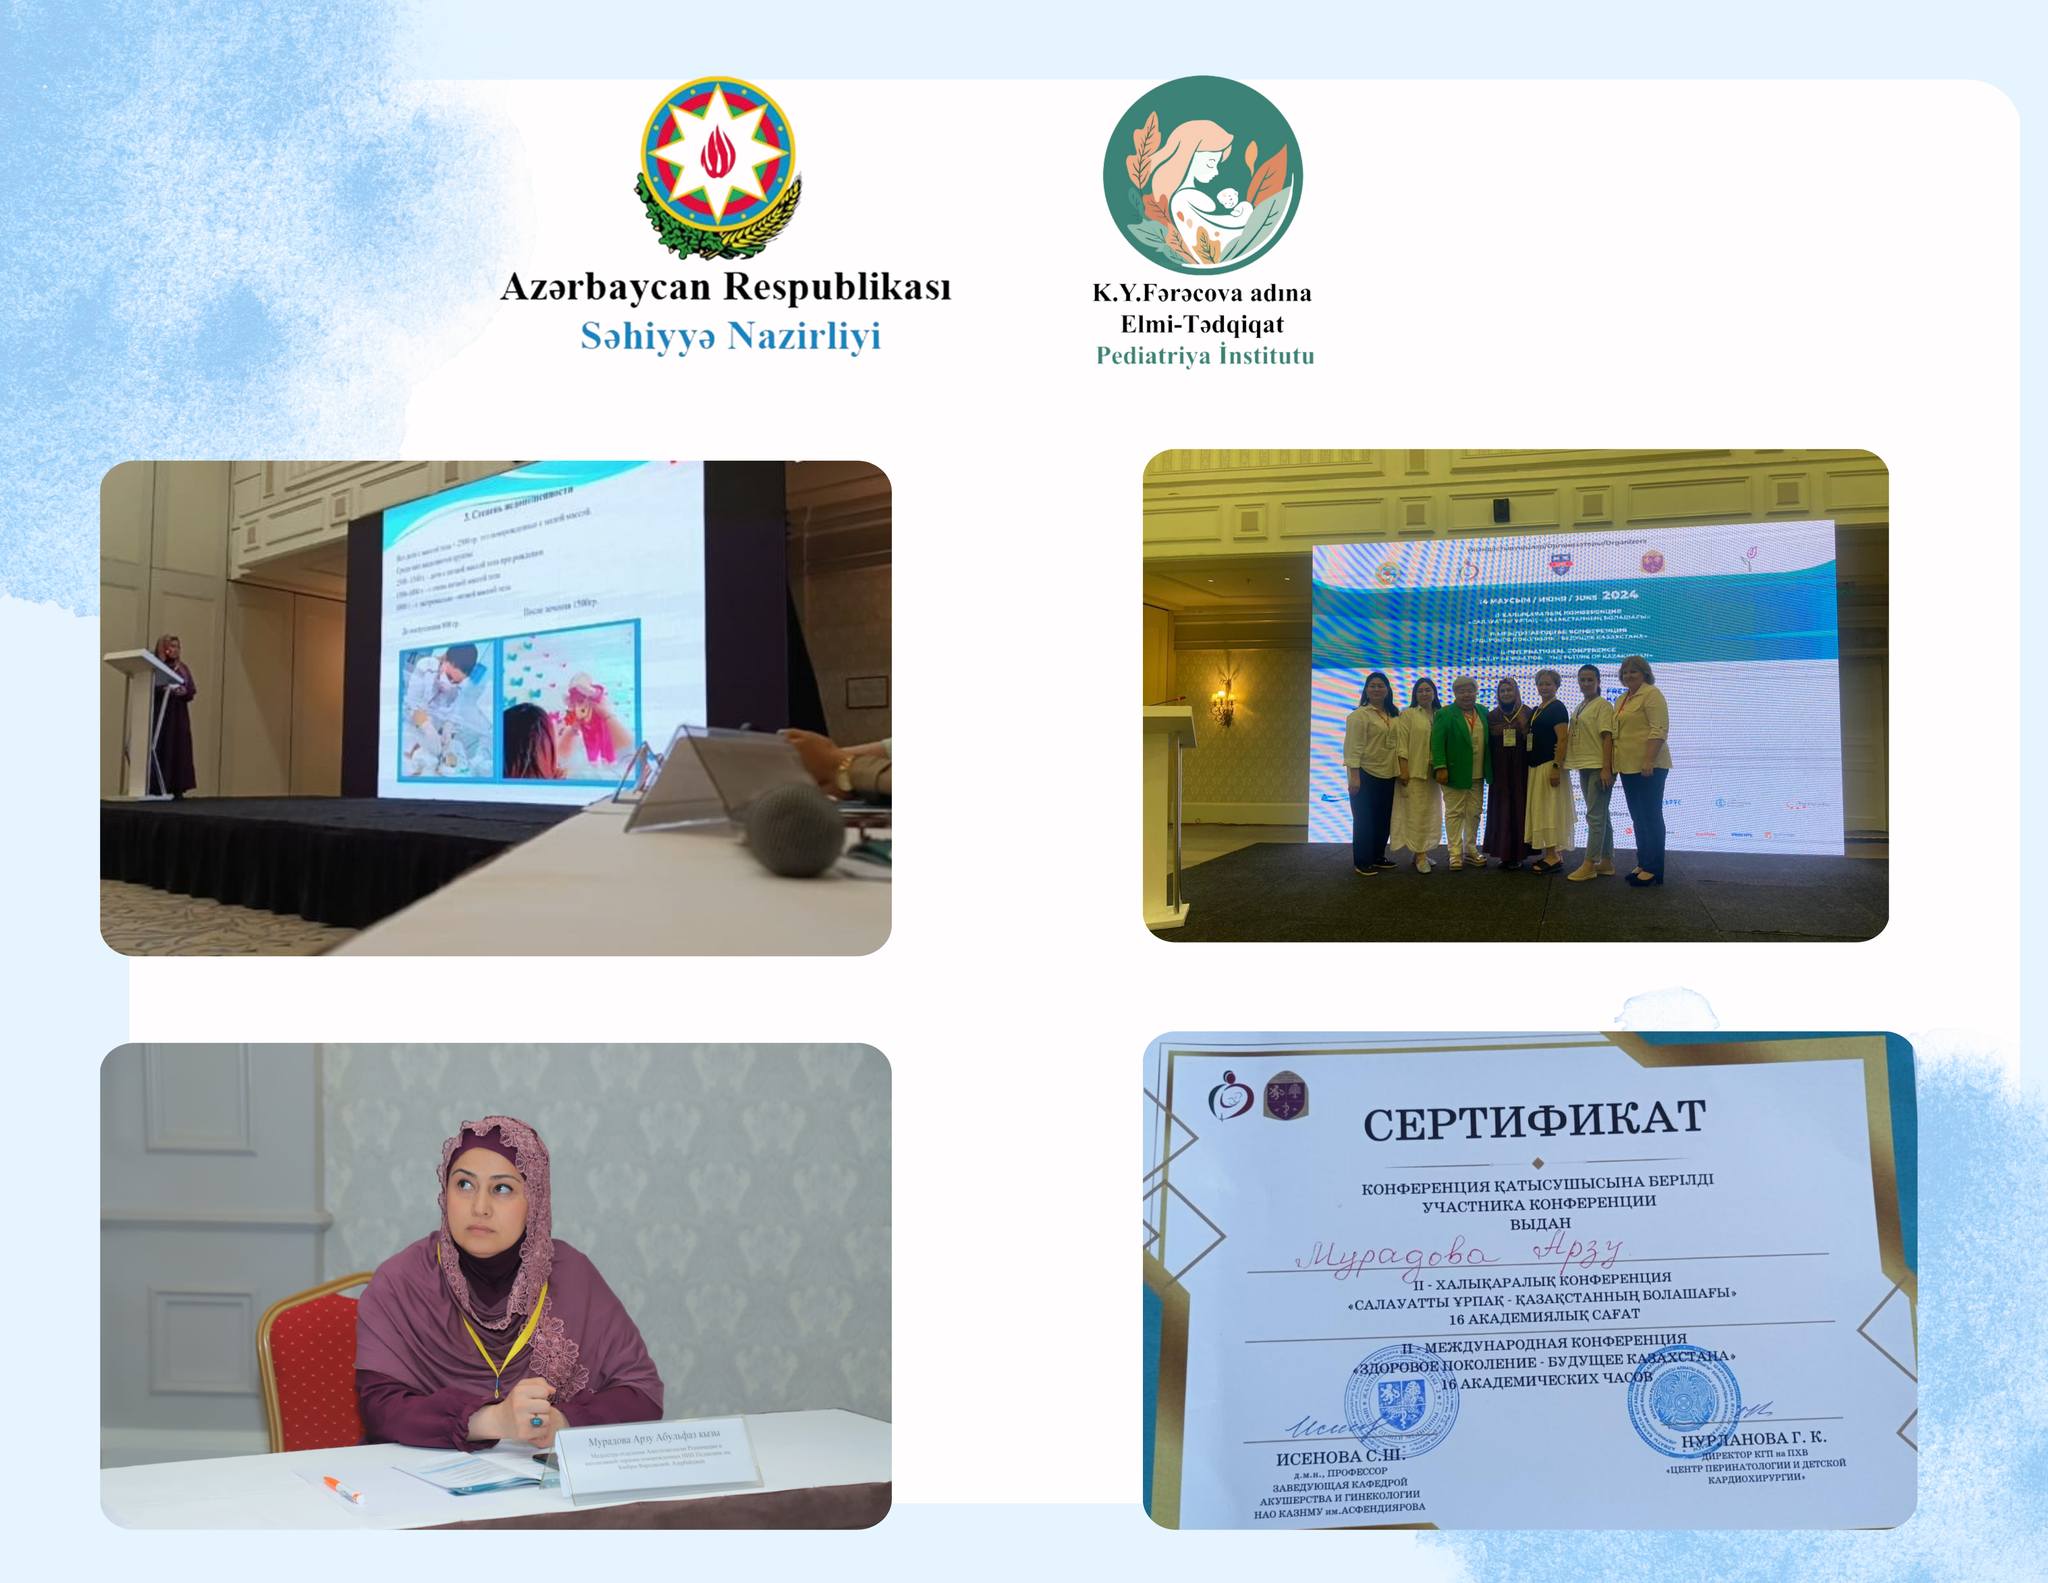 Elmi-Tədqiqat Pediatriya İnstitutunun əməkdaşı Qazaxıstanda beynəlxalq konfransda çıxış edib